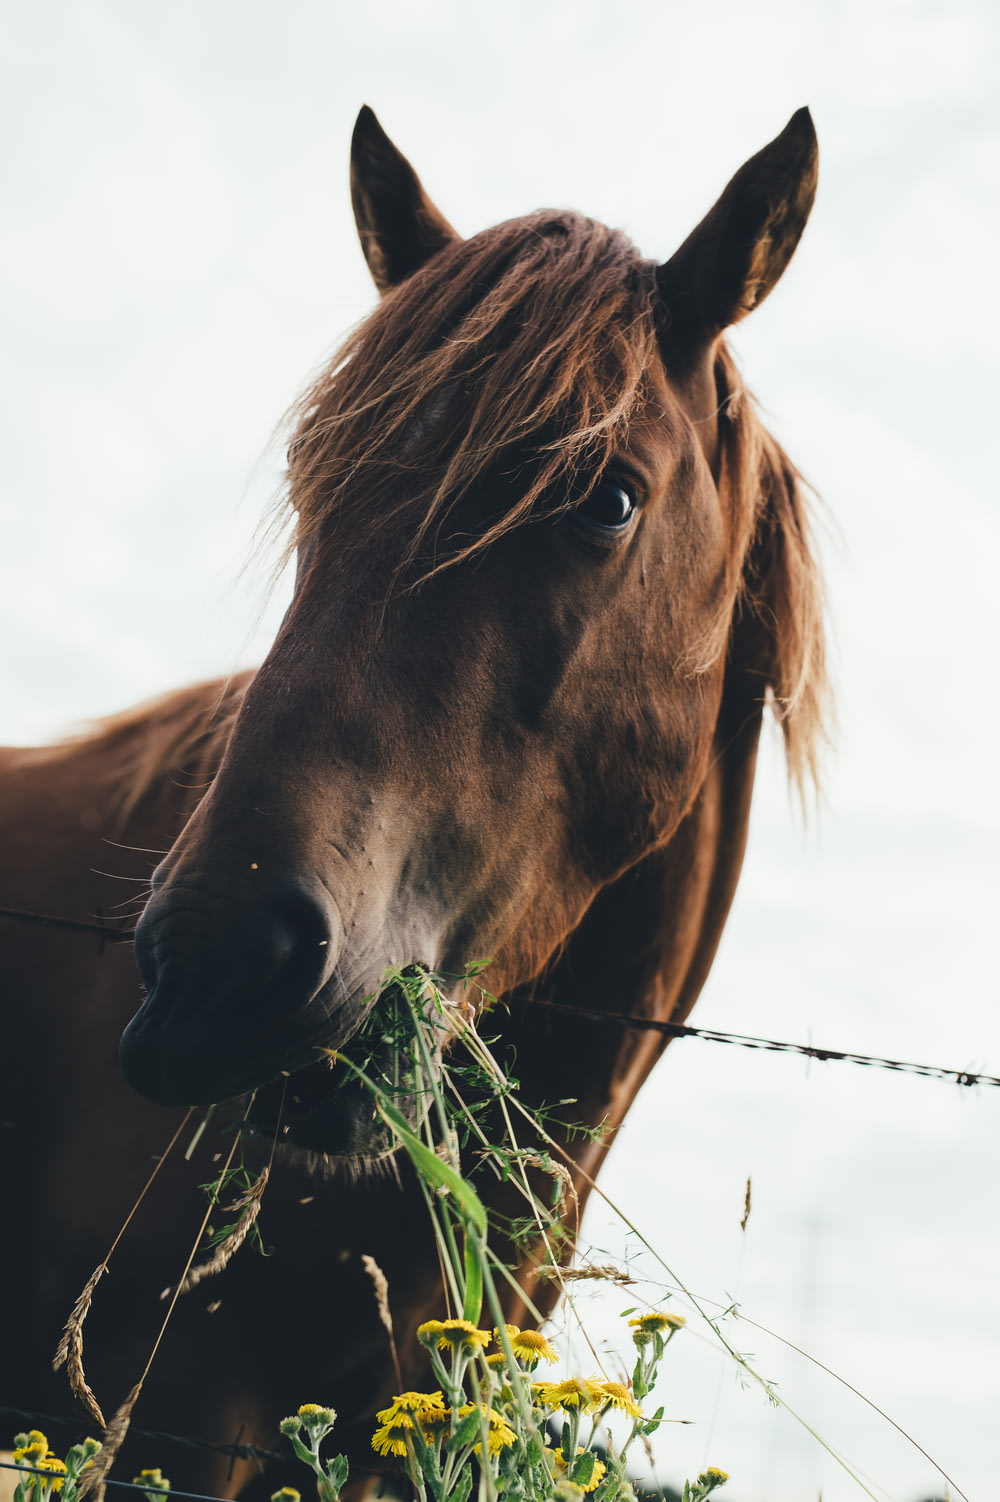 caballo marrón comiendo hierba durante el cielo nublado